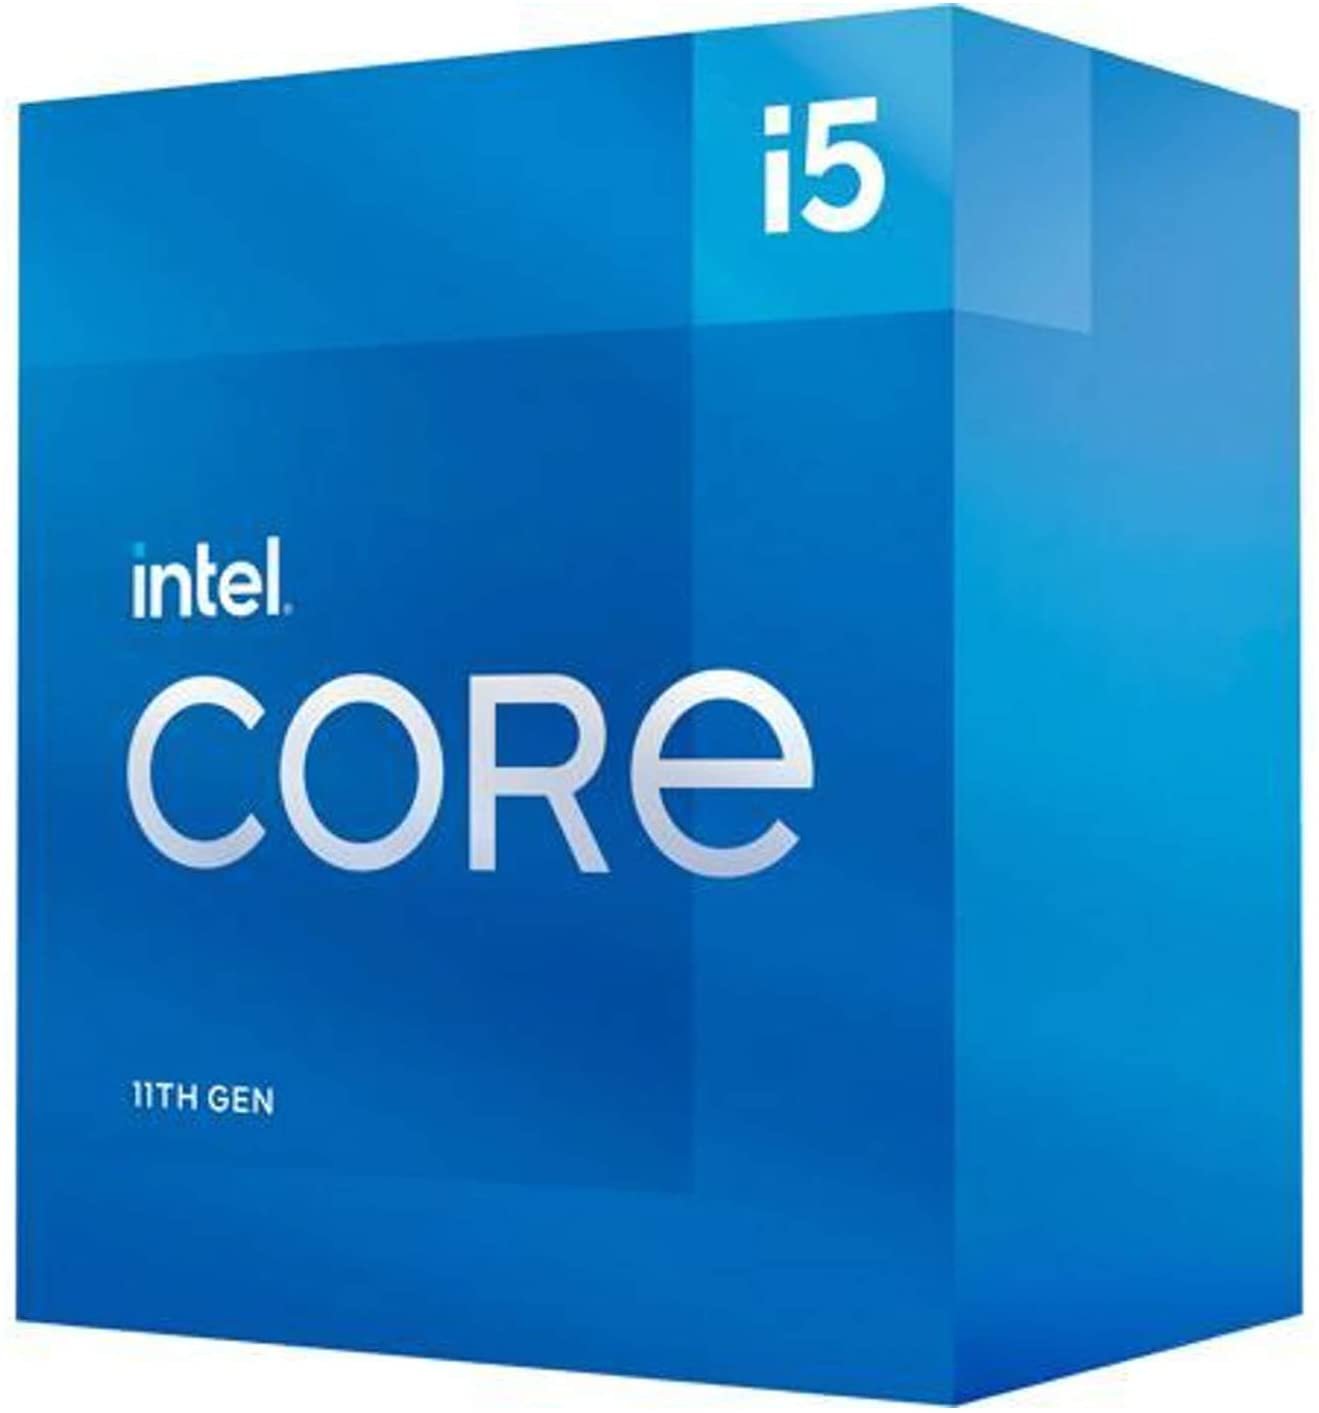 1 CPU - Best $800 PC Build 2021